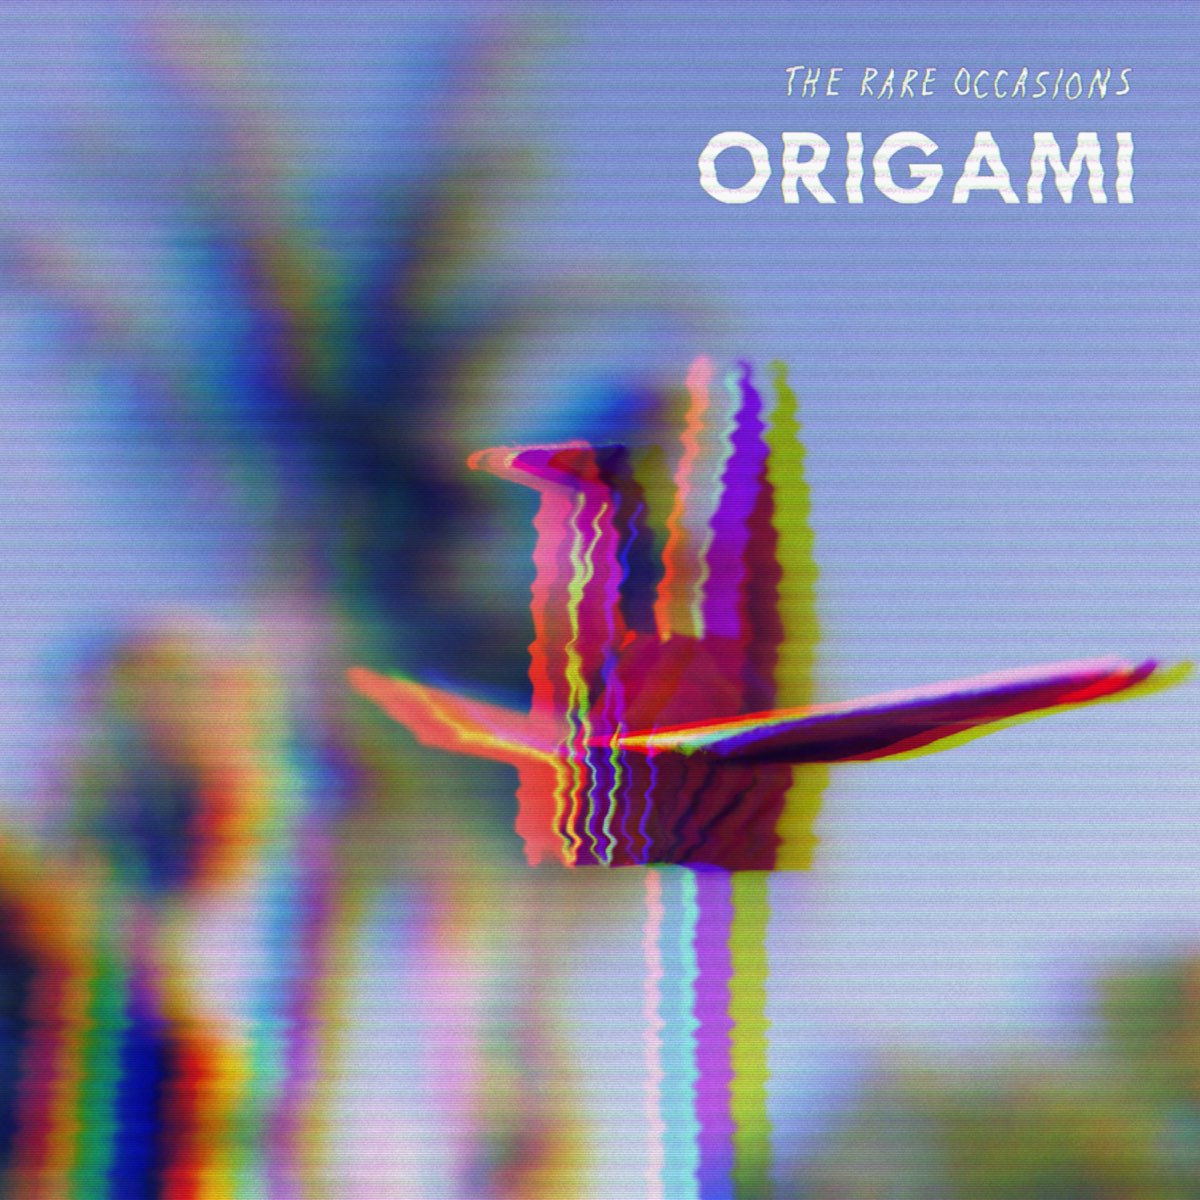 Origami the rare occasions. The rare occasions группа. The rare occasions песни. Notion the rare occasions обложка. The rare occasions перевод